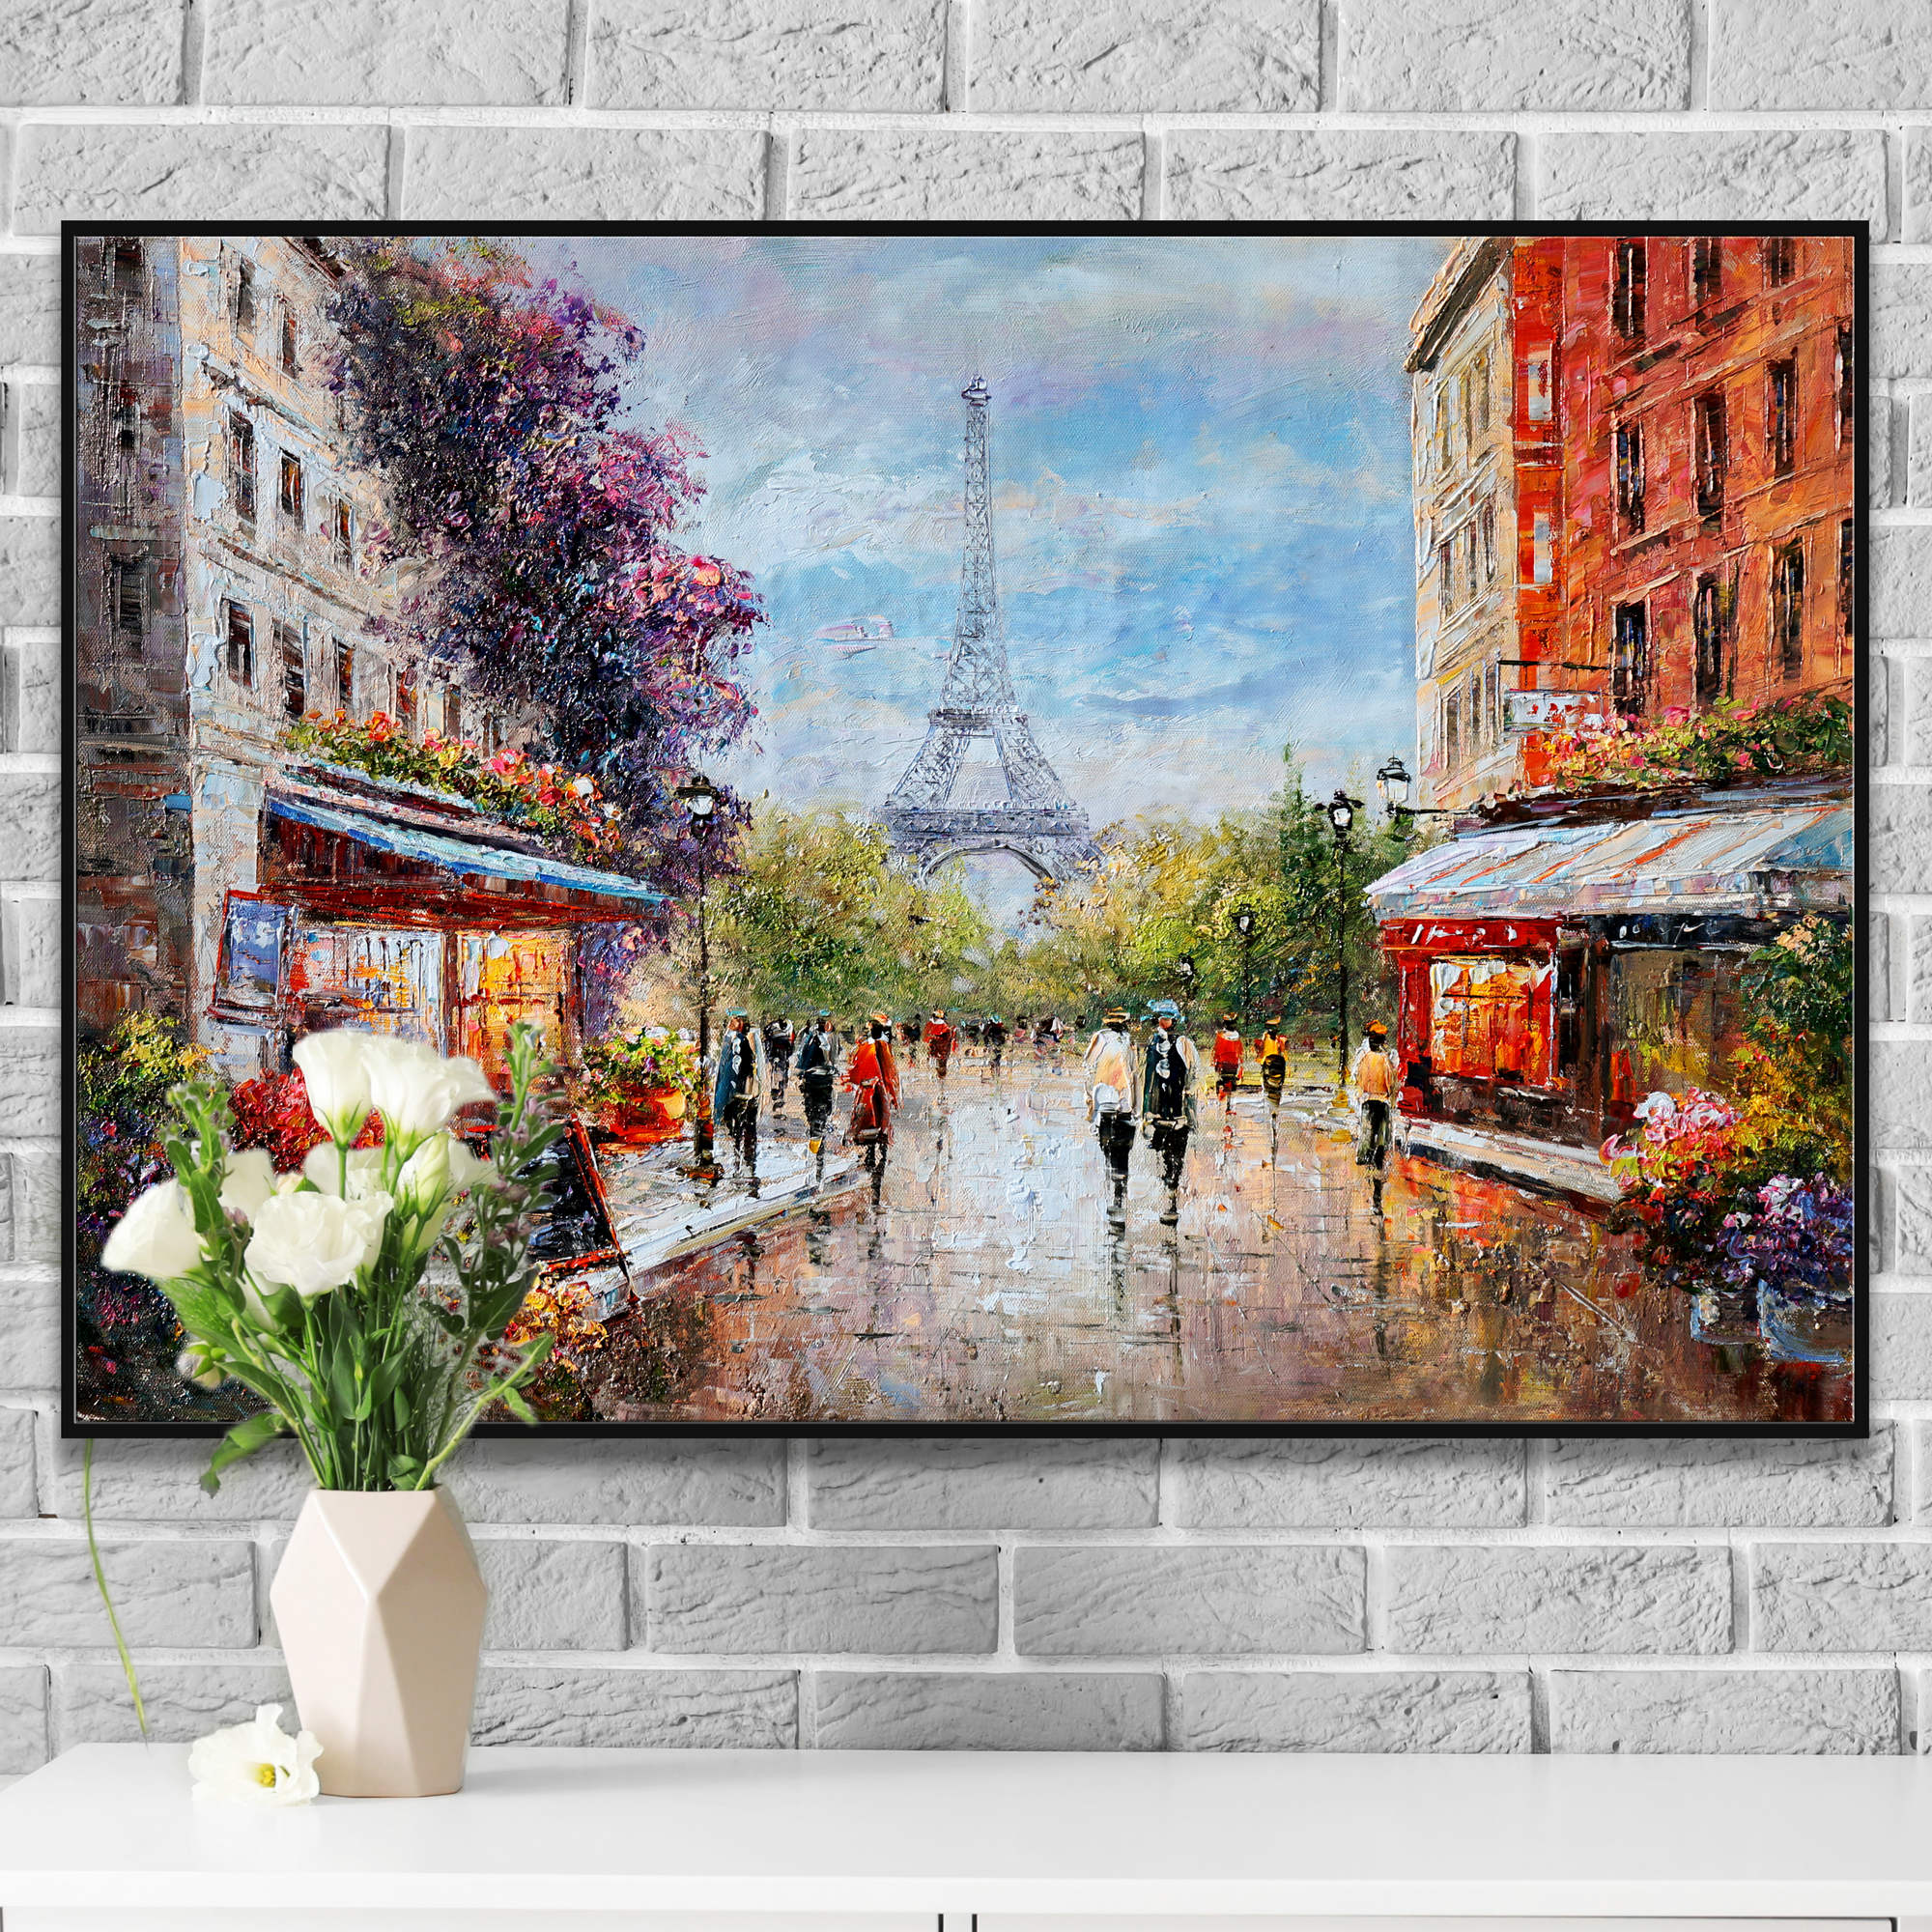 Dipinto impressionista della Torre Eiffel e viandanti a Parigi.